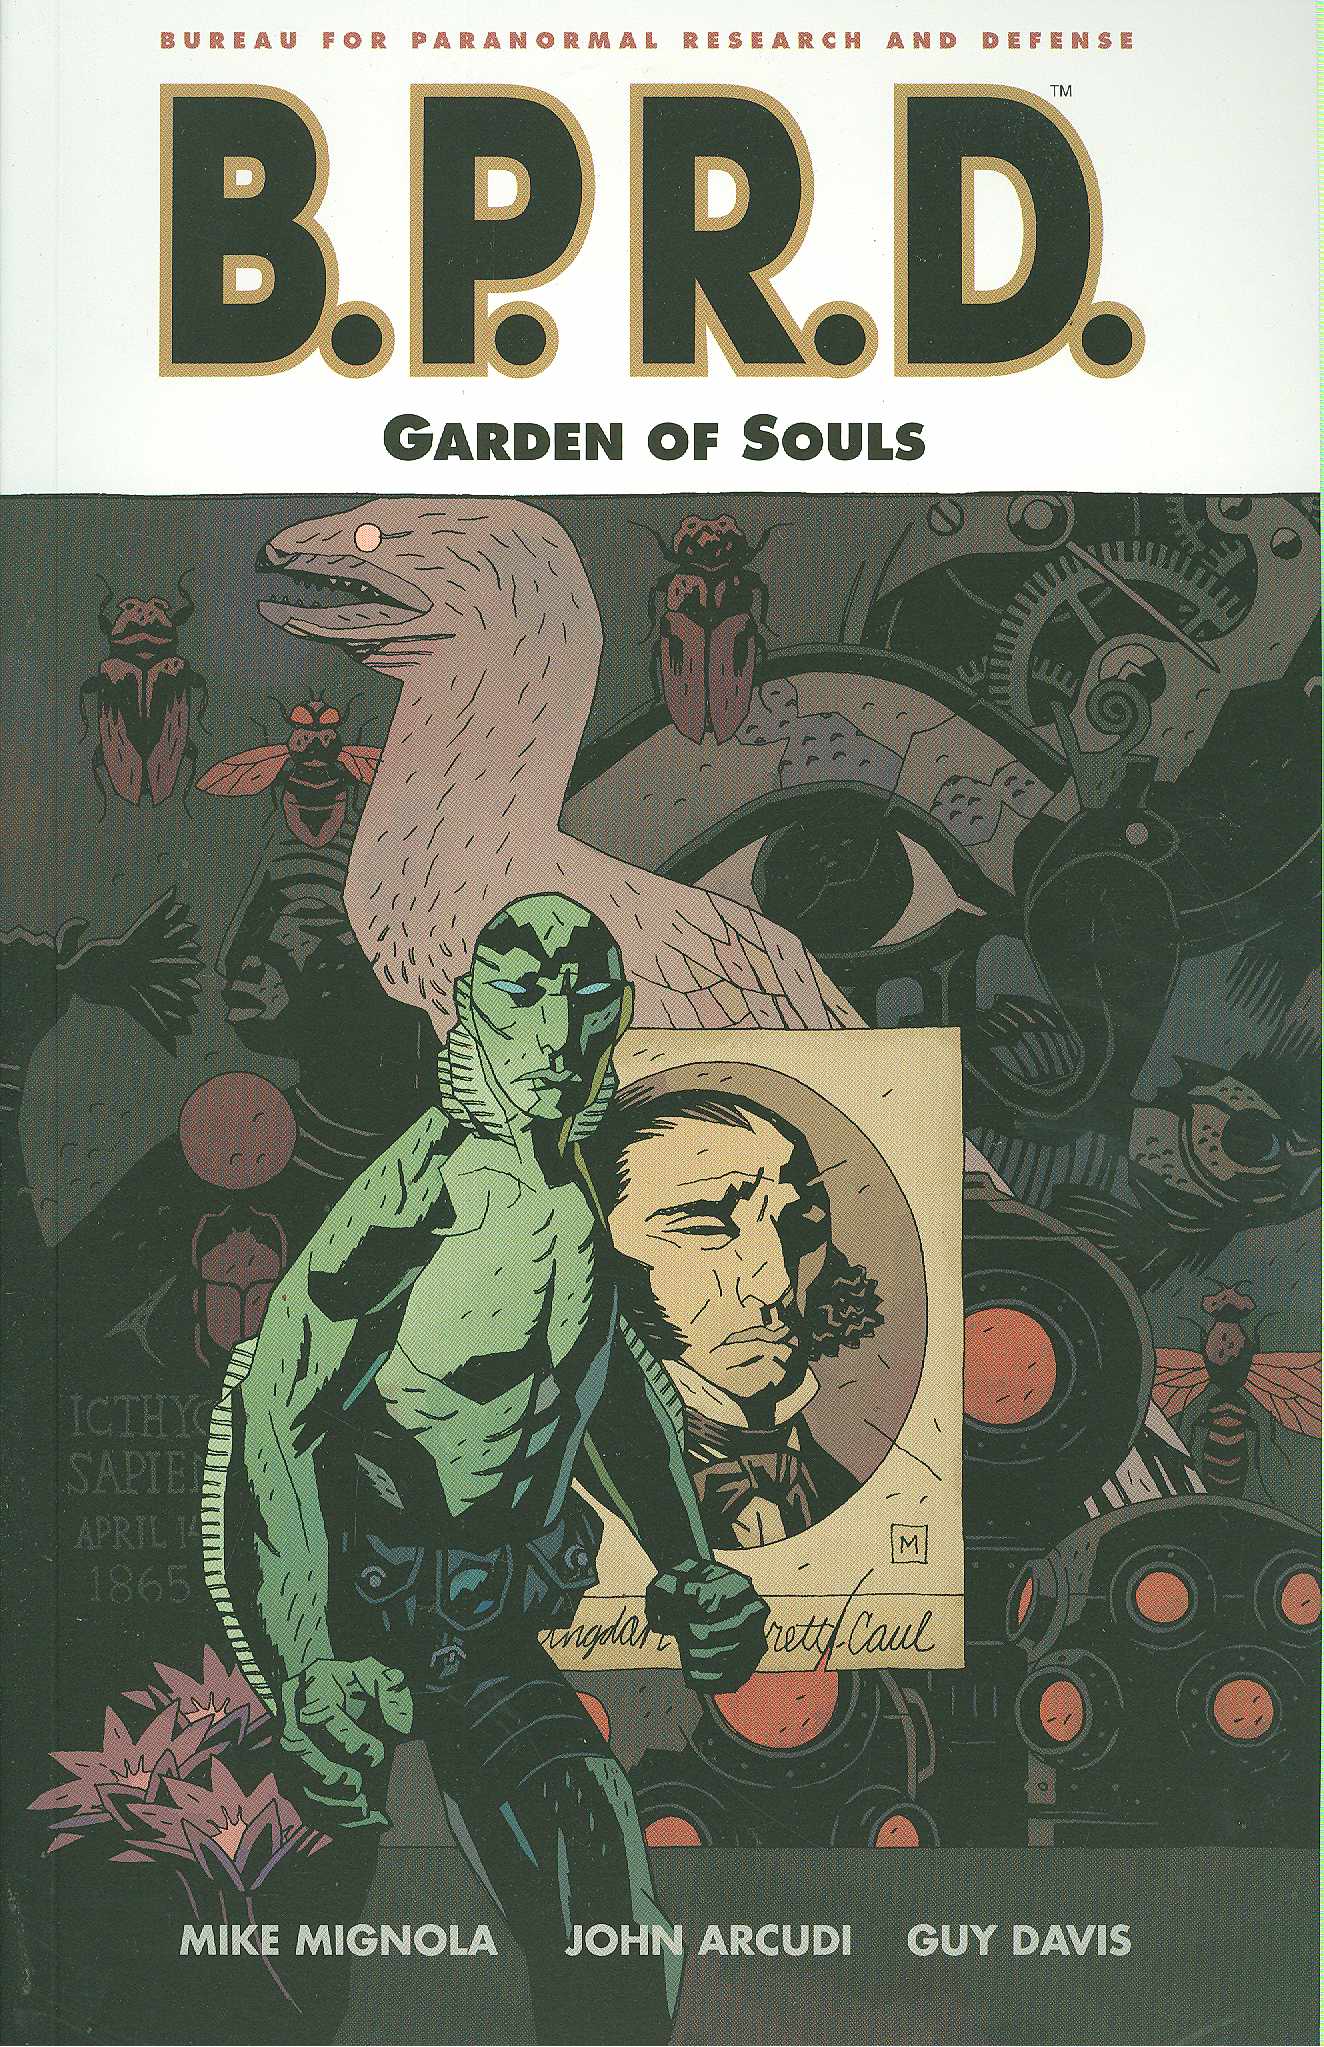 B.P.R.D. Graphic Novel Volume 7 Garden of Souls